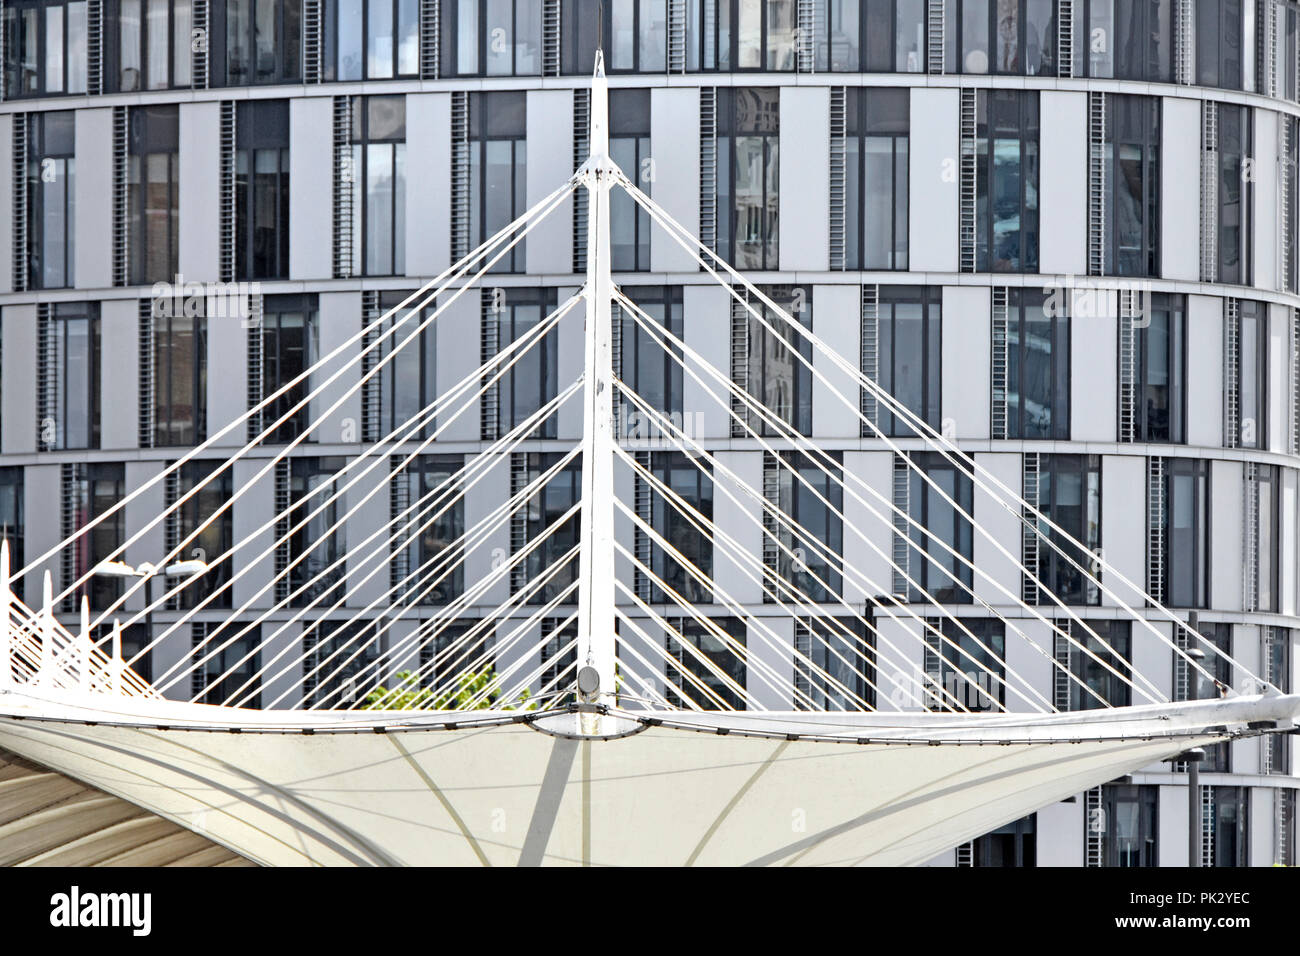 Widersprüchliche Formen von Rechtecken & weiße Dreiecke in zwei moderne Baukörper design Blick in fast Graustufen abstrakte Architektur Muster DE Stockfoto